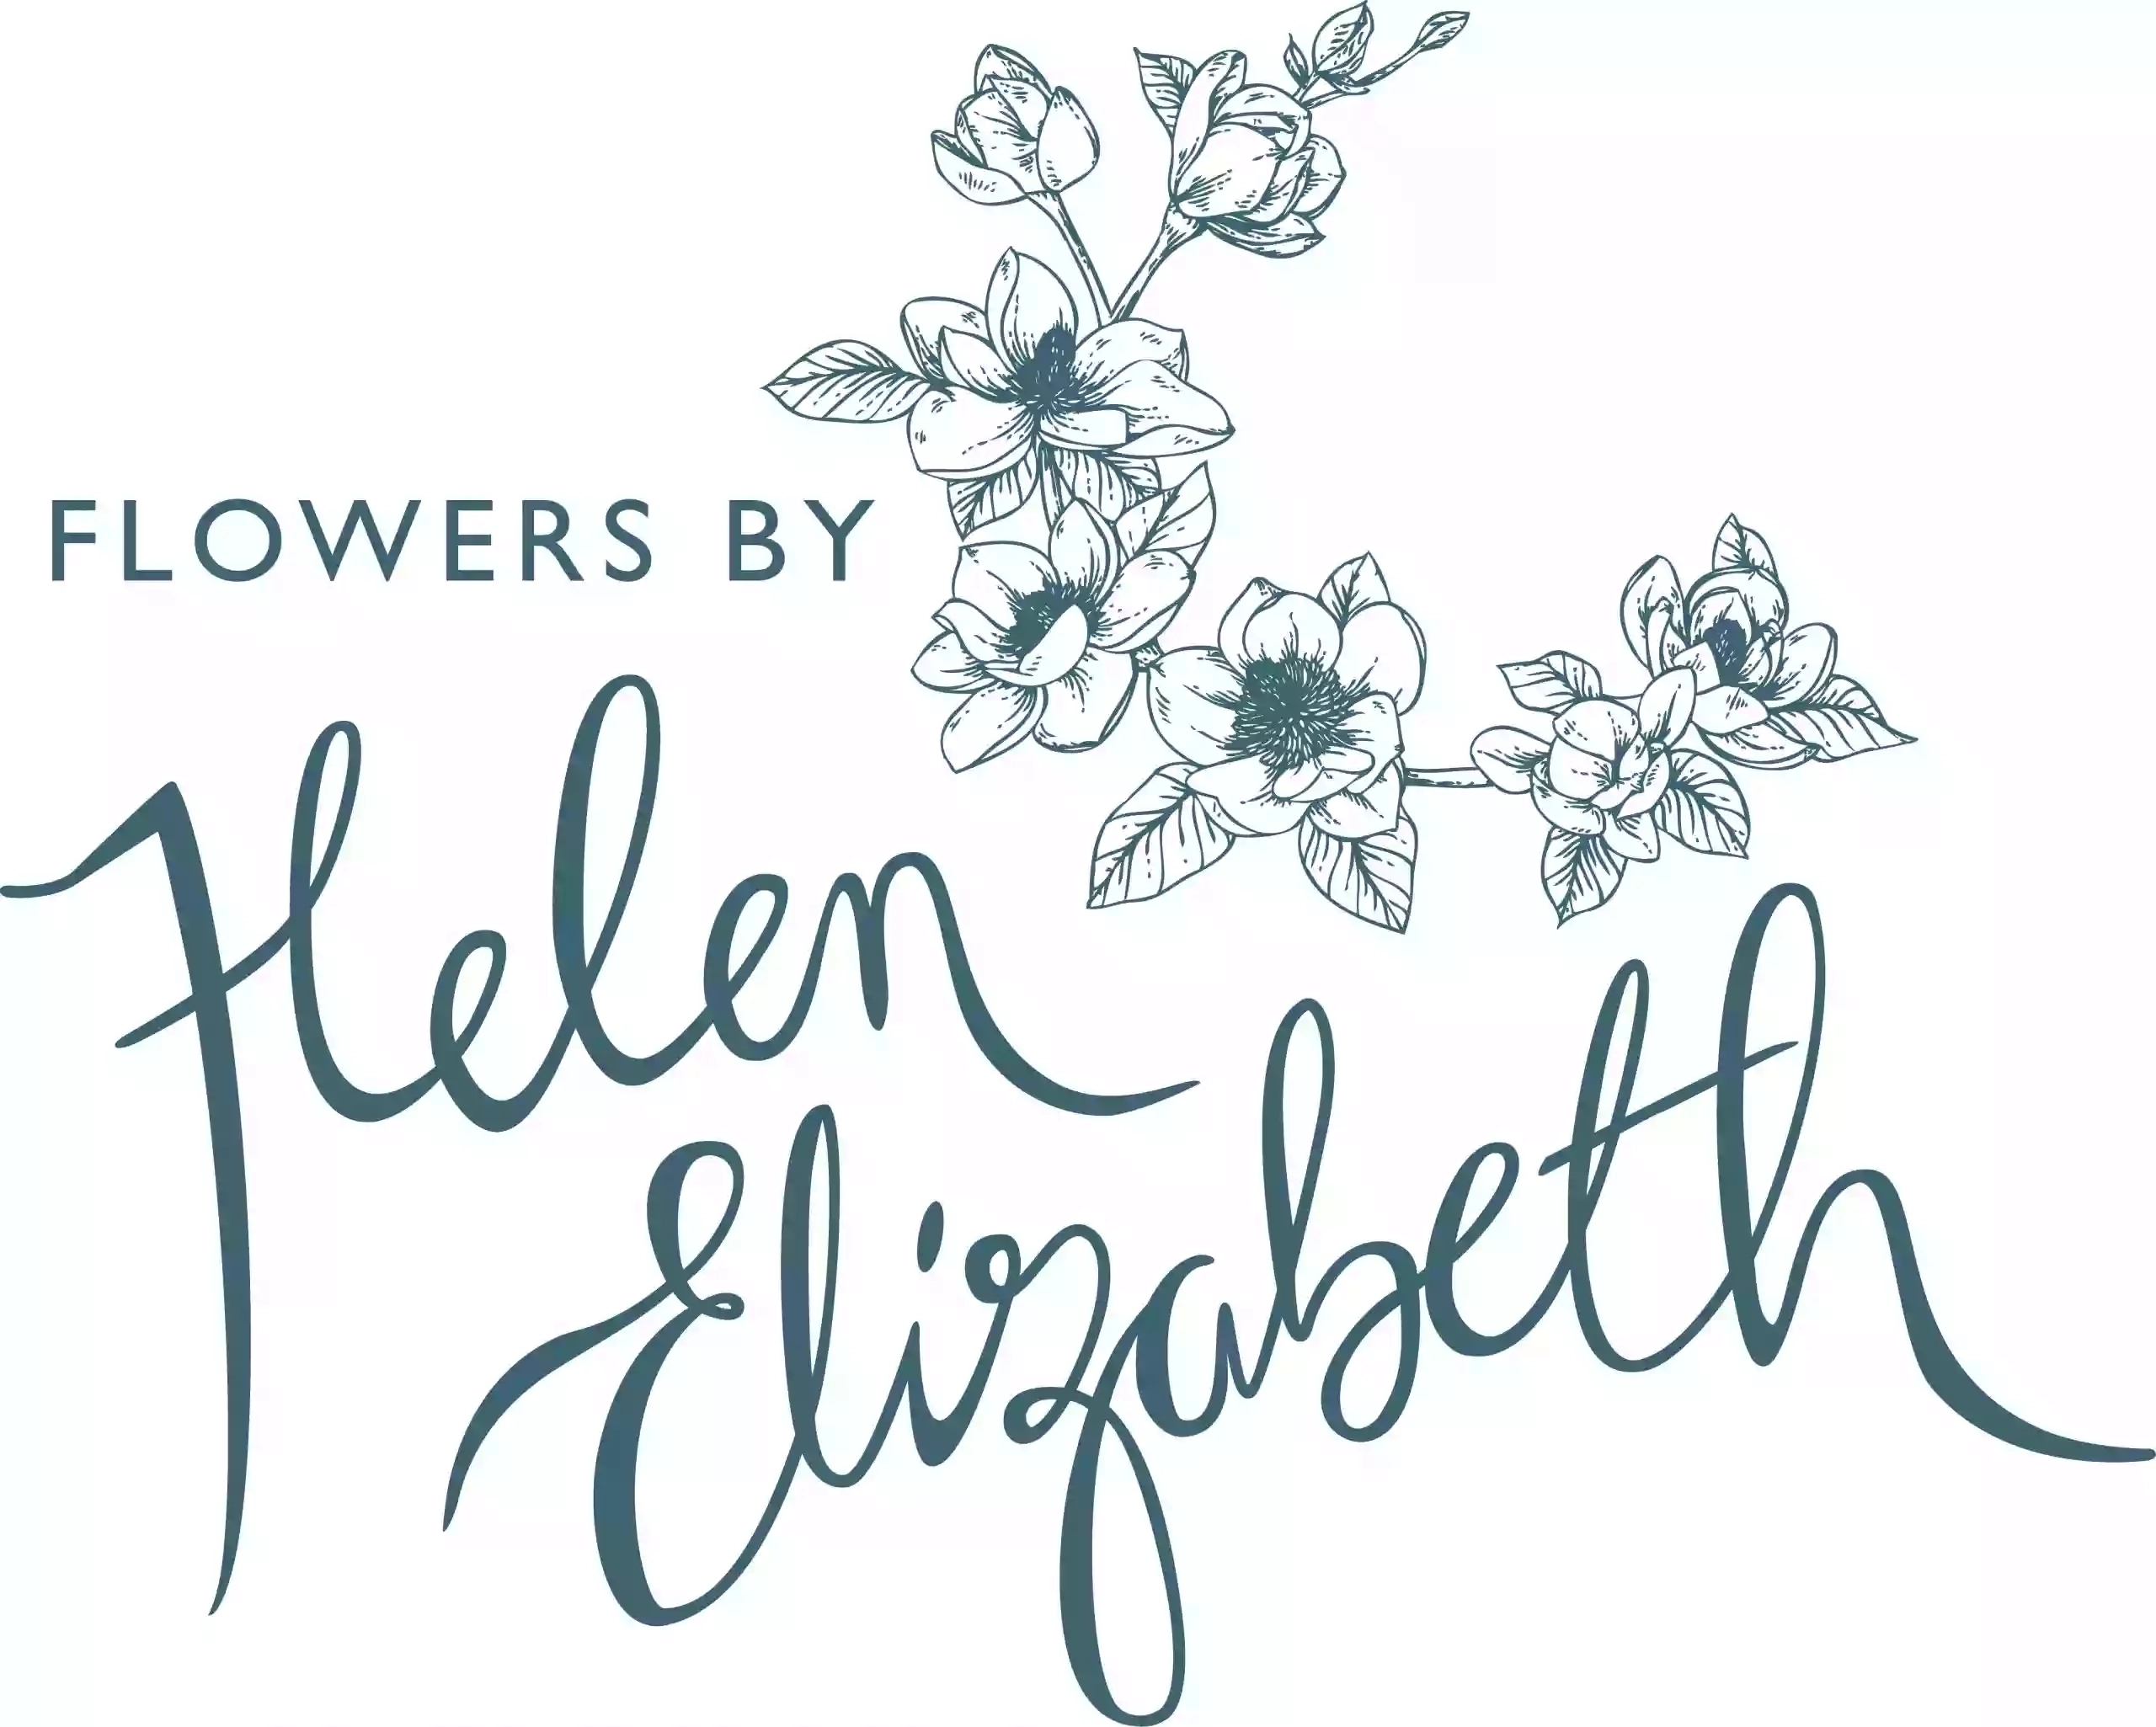 Flowers by Helen Elizabeth